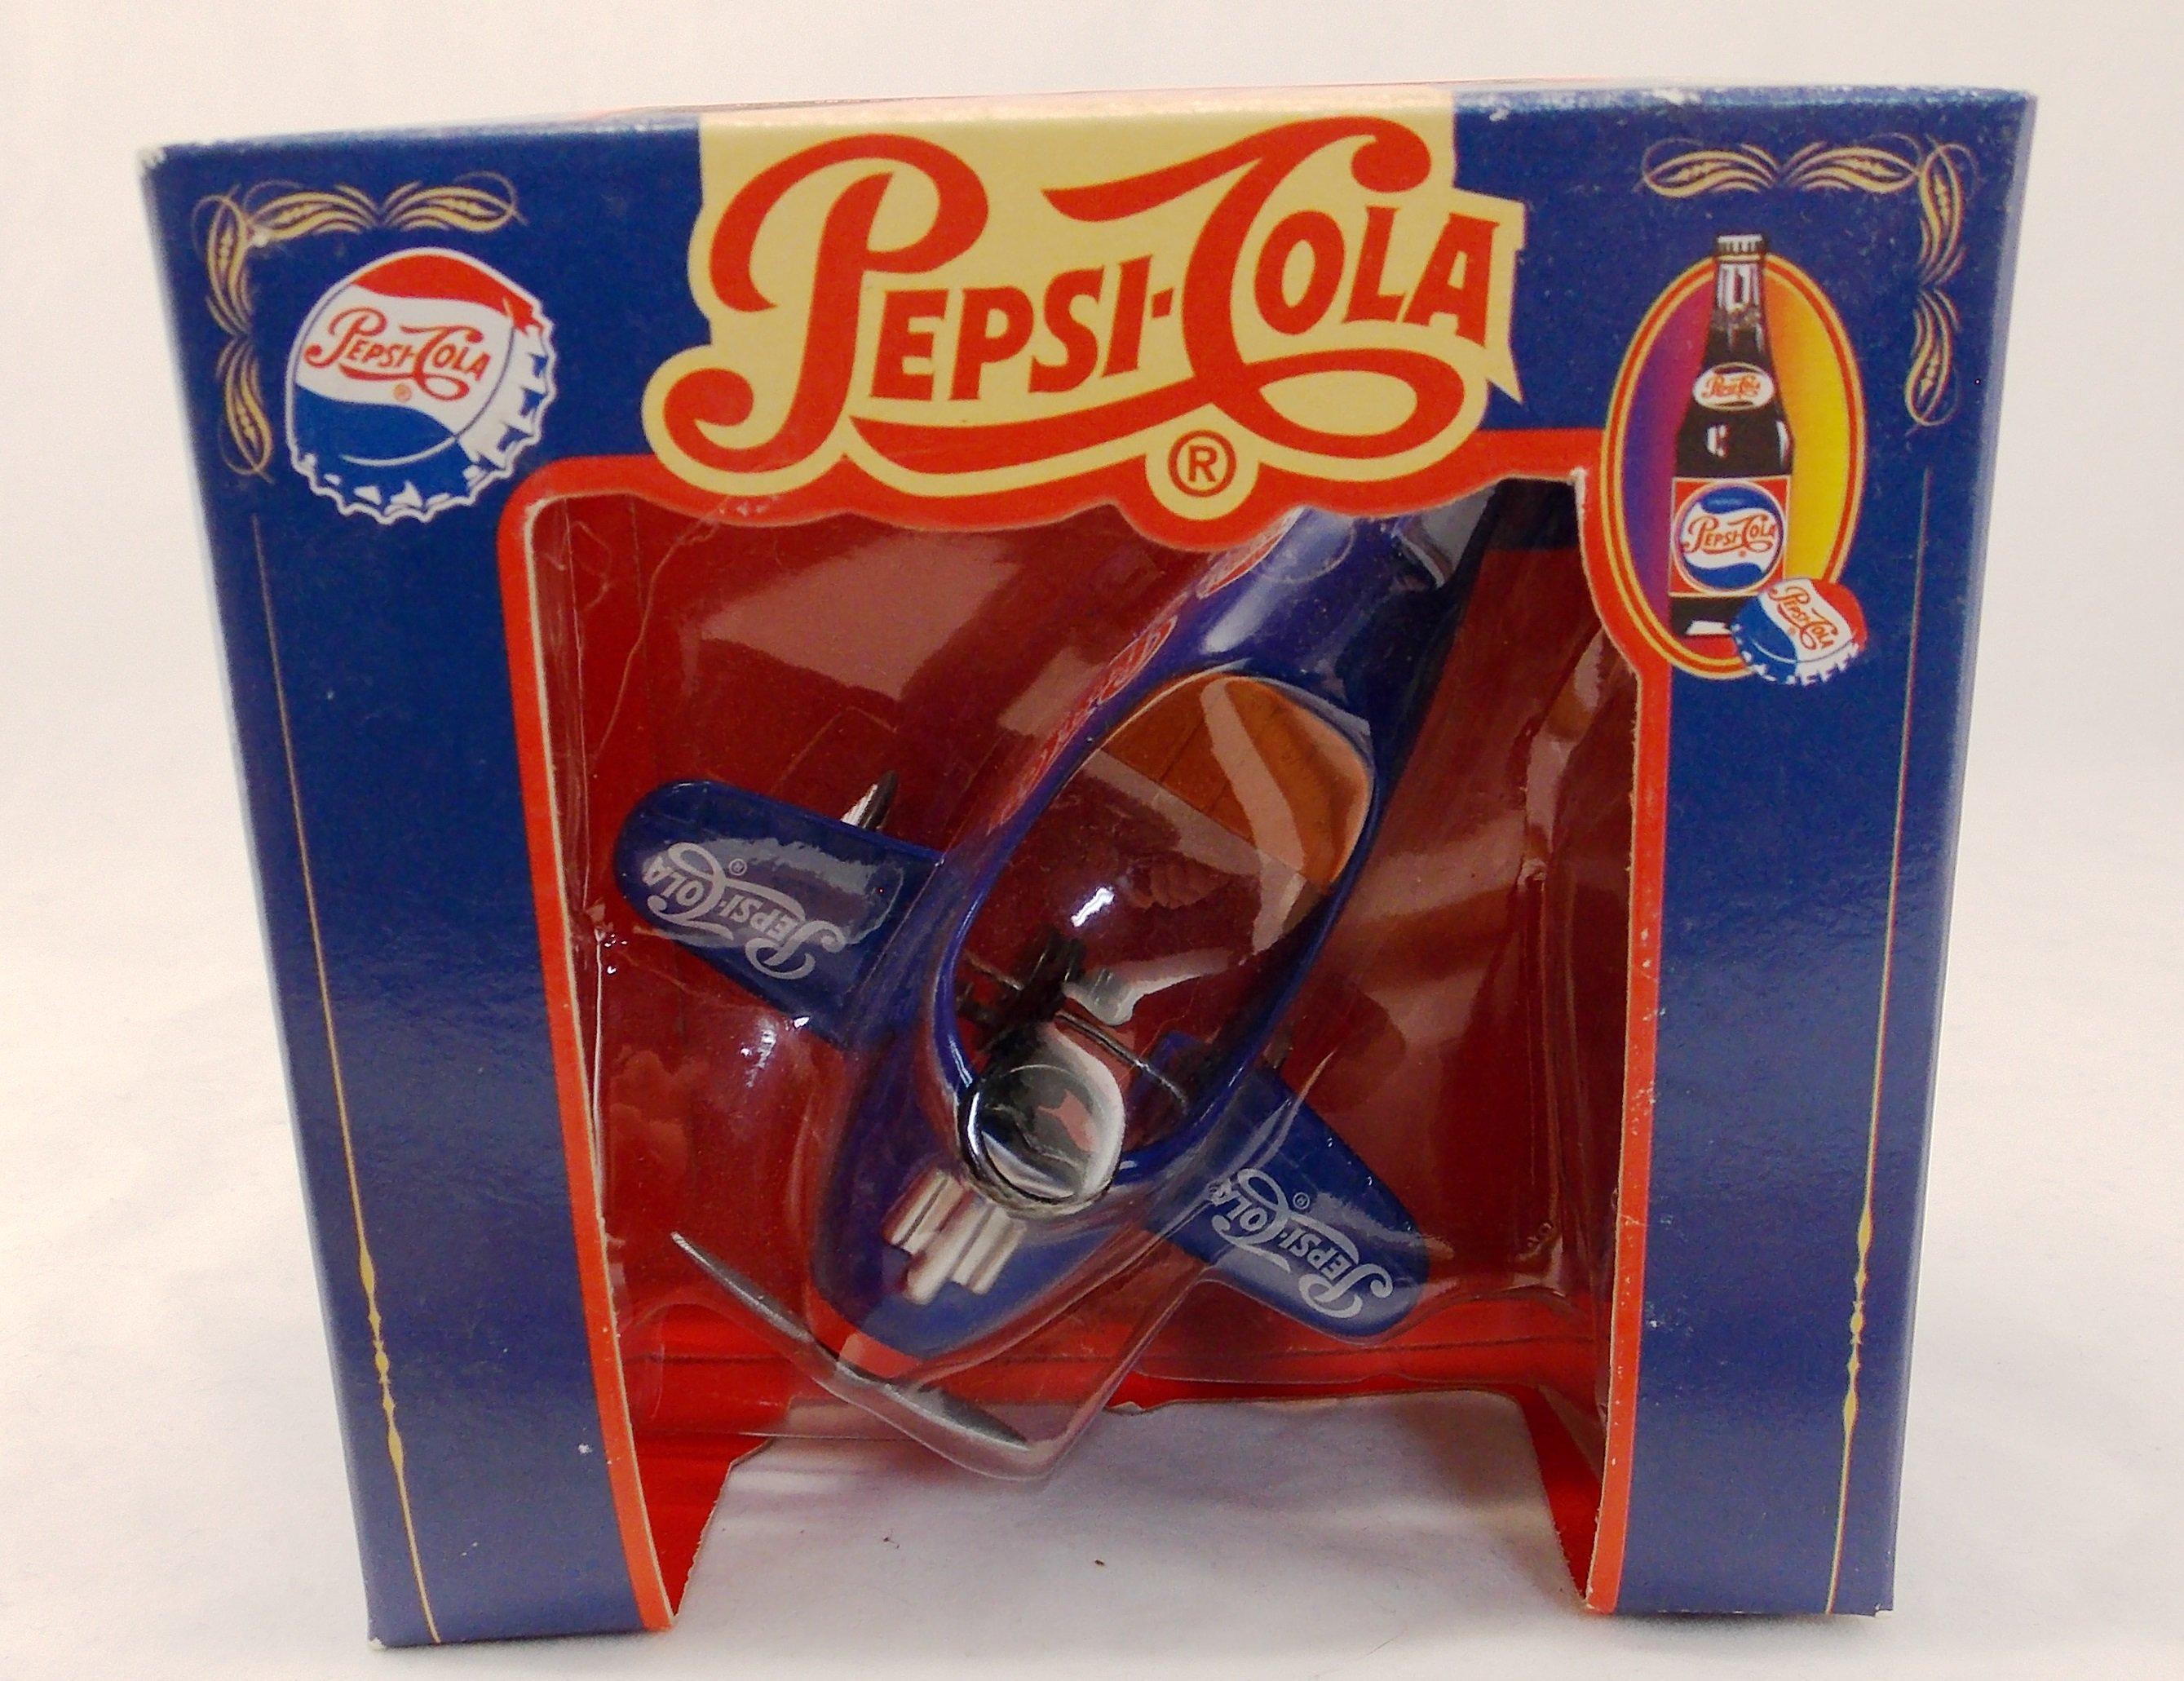 Diecast Mini Pepsi Cola Pedal Plane Toy